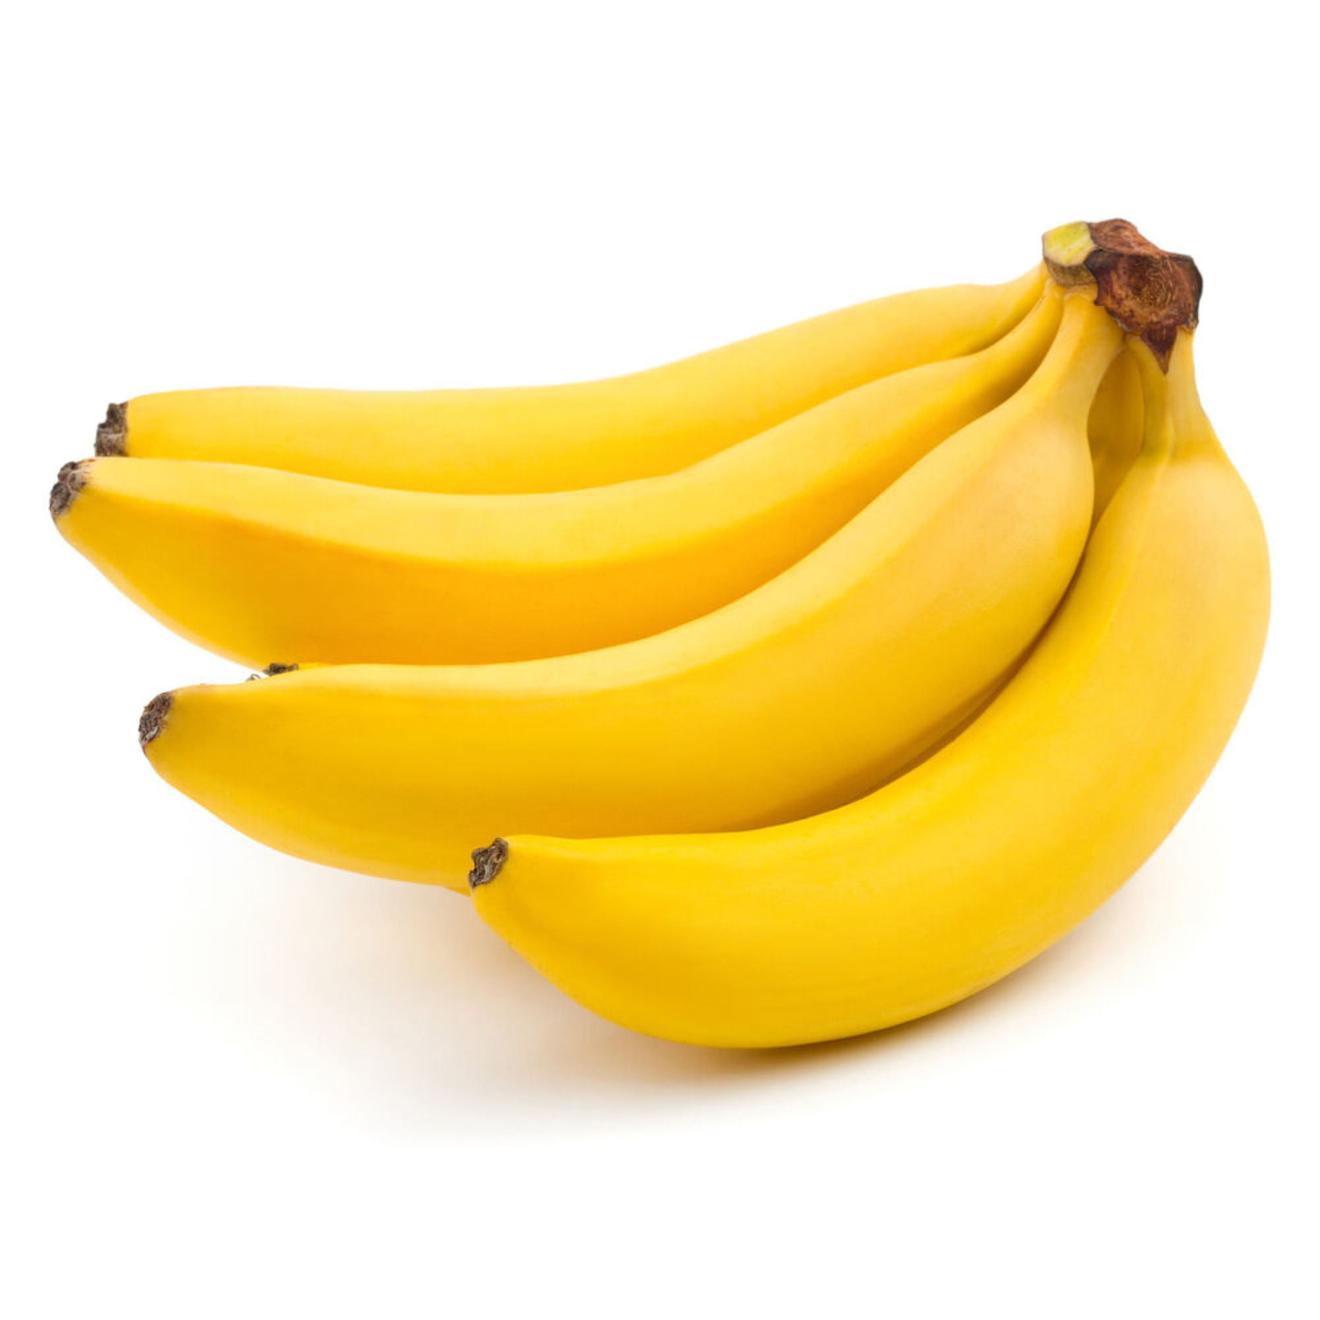 Oferta de Banana seleccion x kg. por $1290 en Carrefour